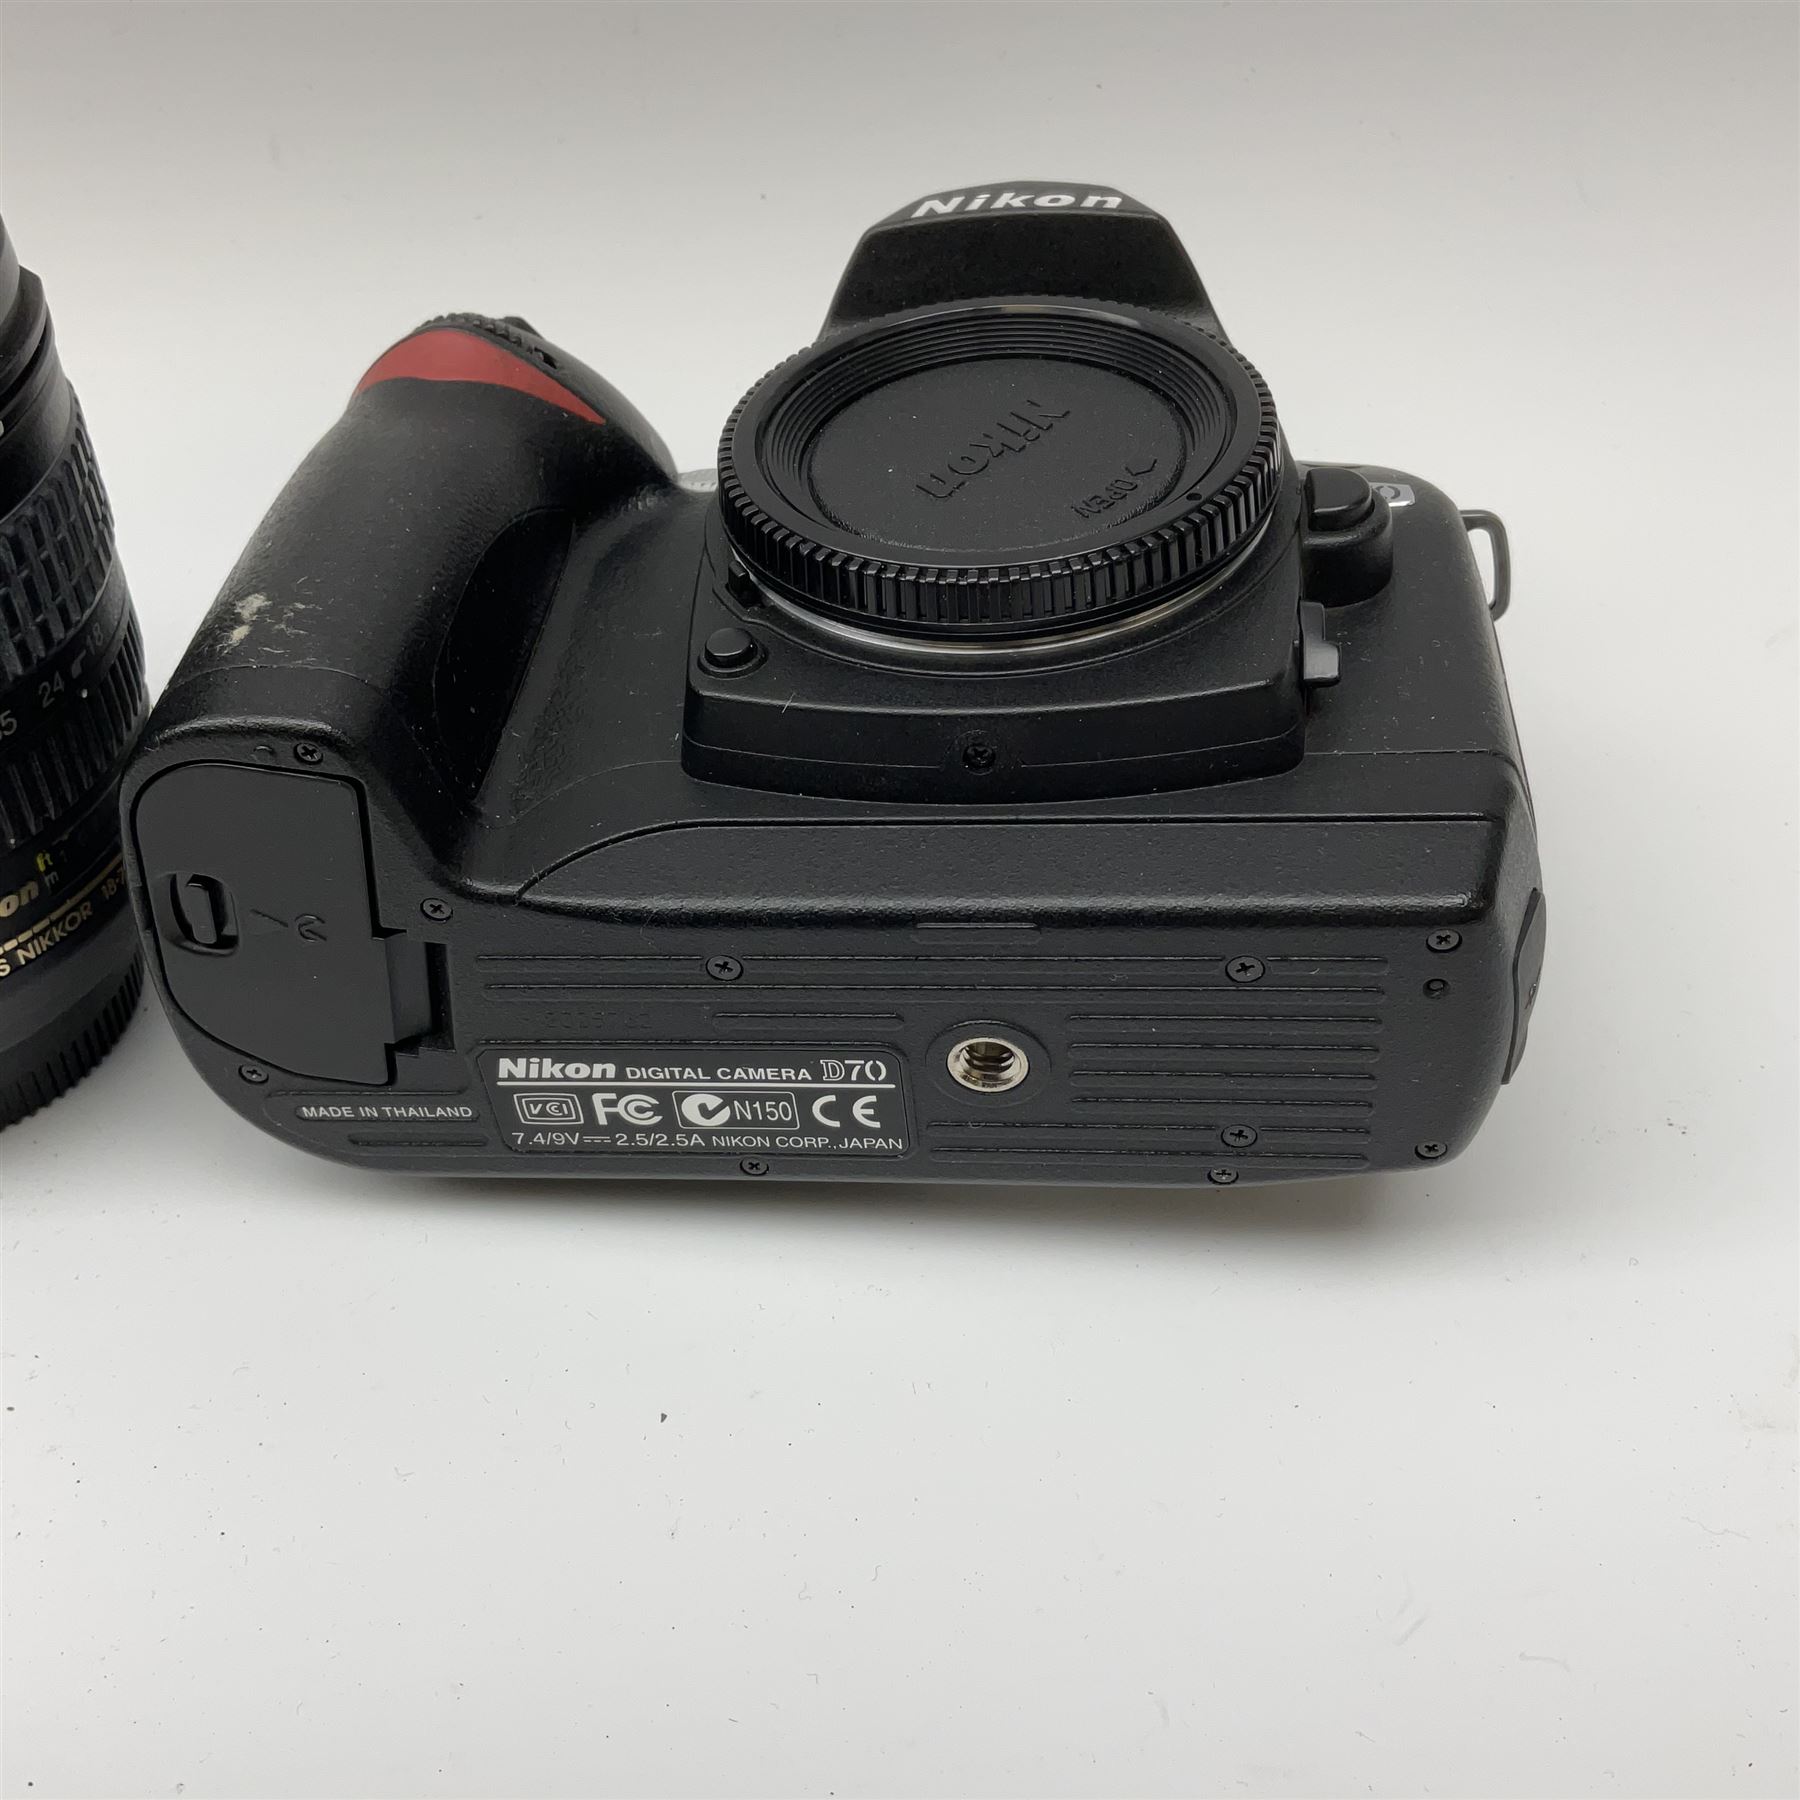 Nikon D70 Kit with AF-S Zoom Nikkor 18-70mm f/3.5~4.5G lens - Image 5 of 8